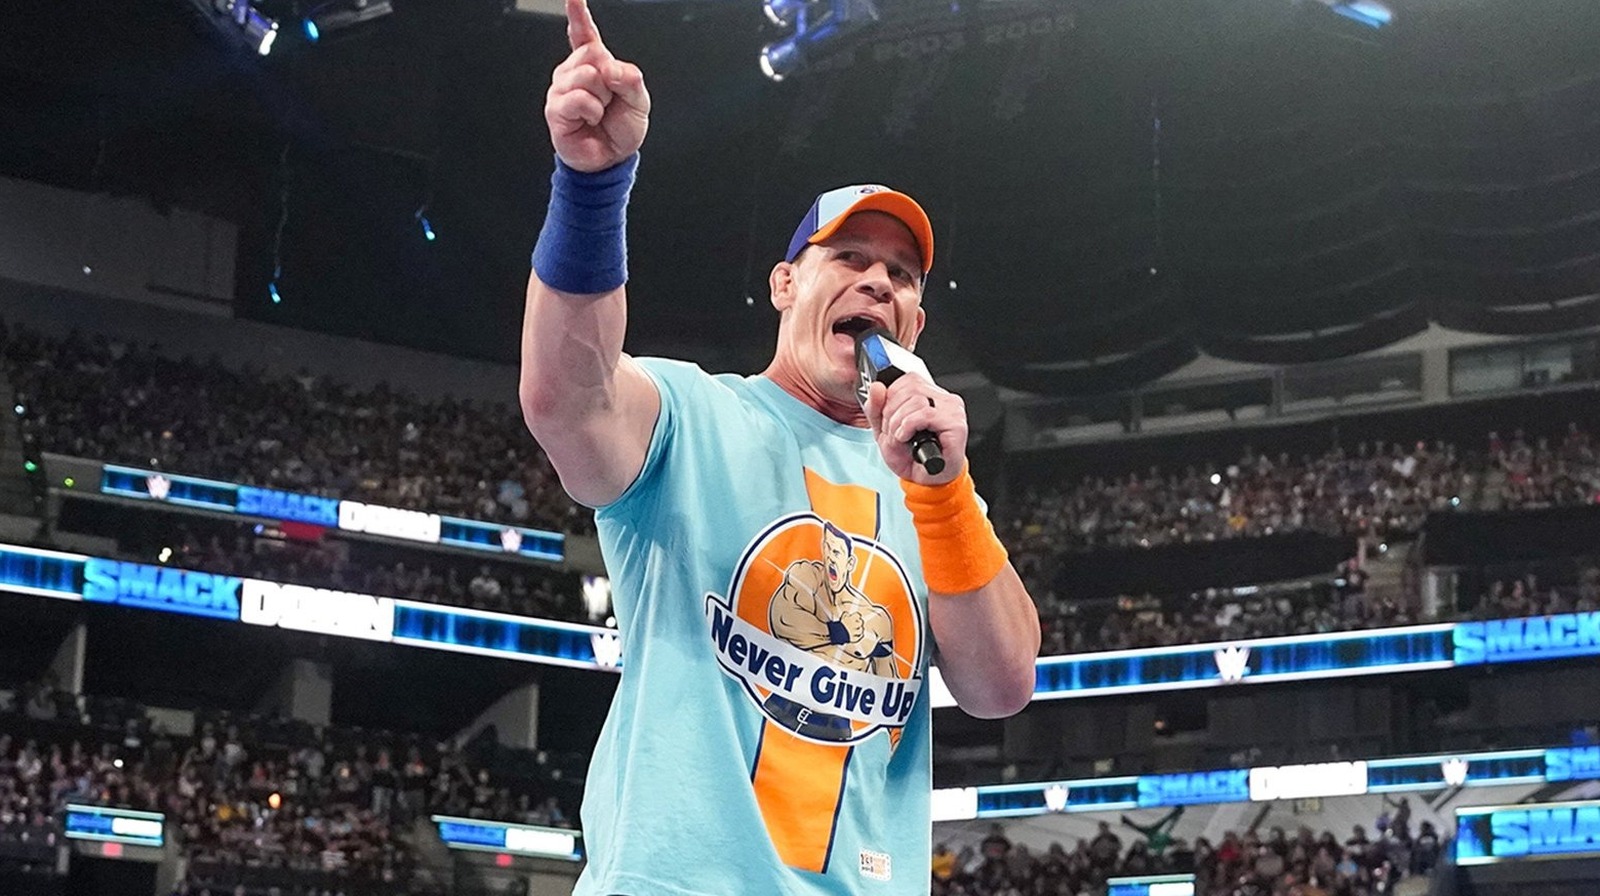 La estrella de la WWE dice que el conocimiento de lucha libre de John Cena está "a pasos agigantados" por encima de los demás